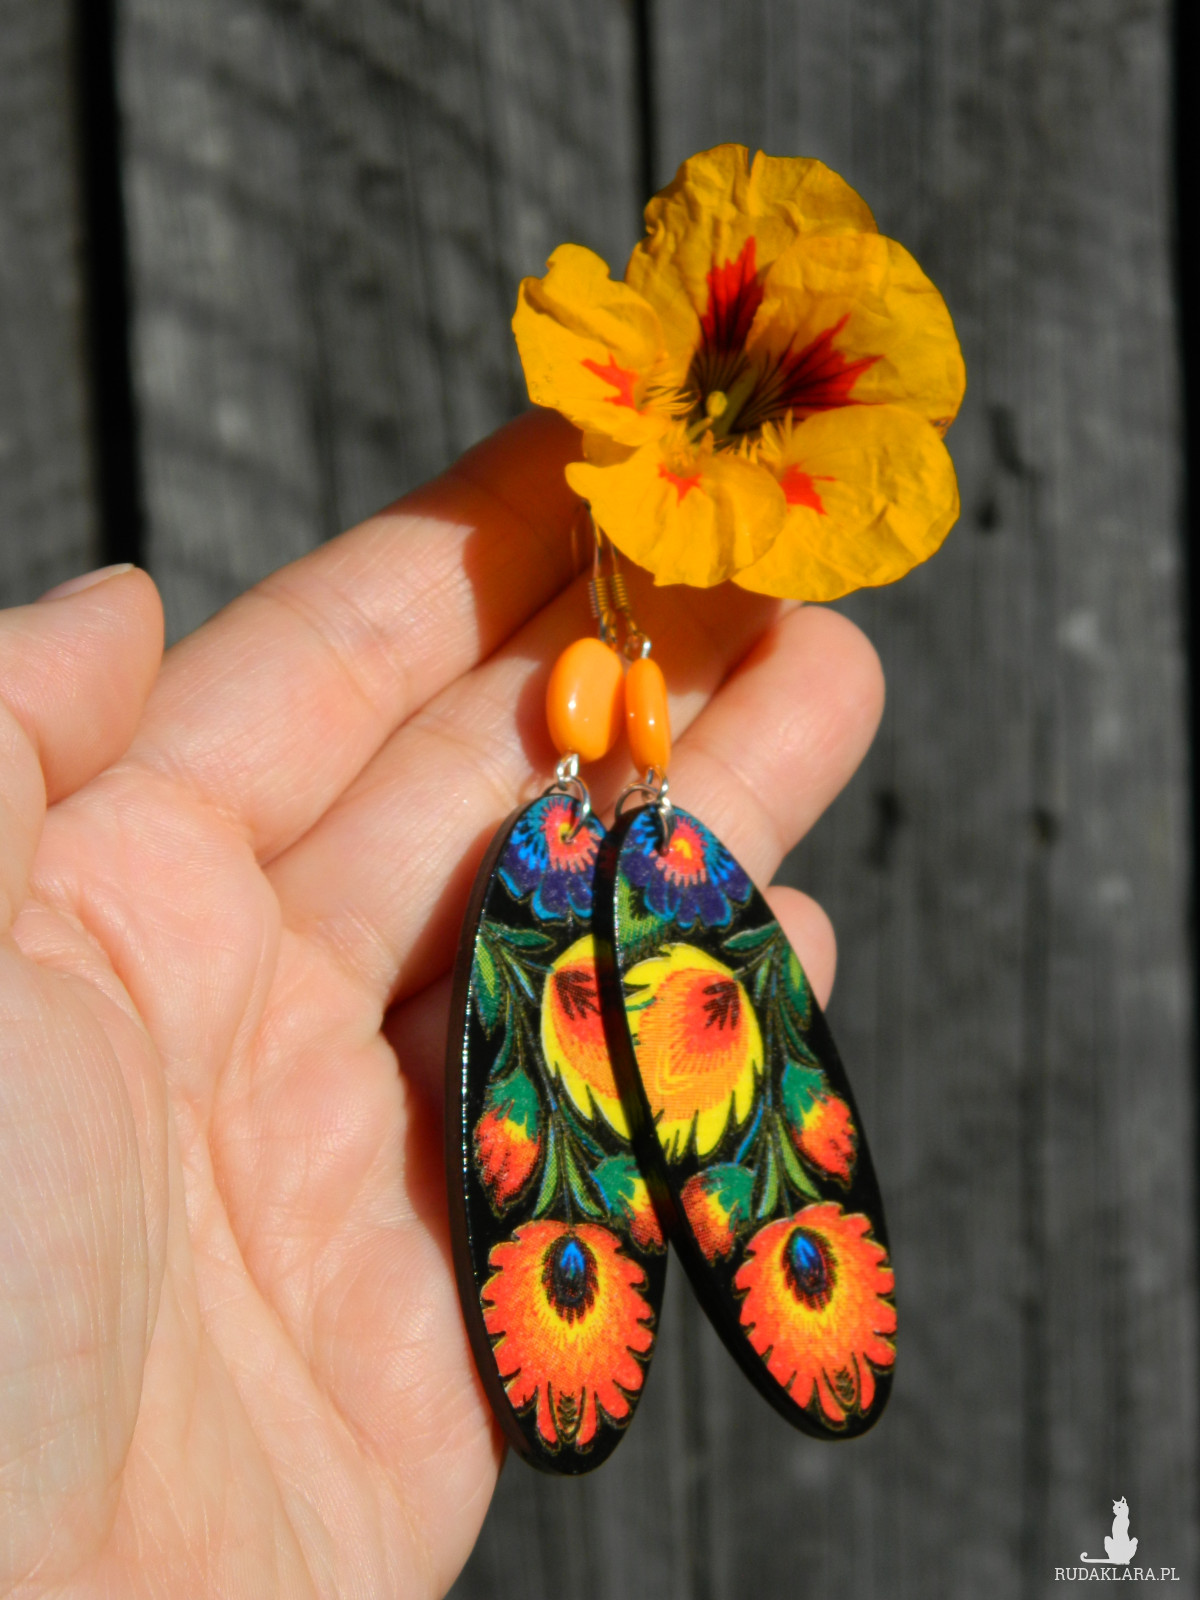 Kolczyki ludowe łowickie kwiaty, prezent dla dziewczyny biżuteria etno boho folk, pomarańczowe żółte czarne, folkowe Słowianki